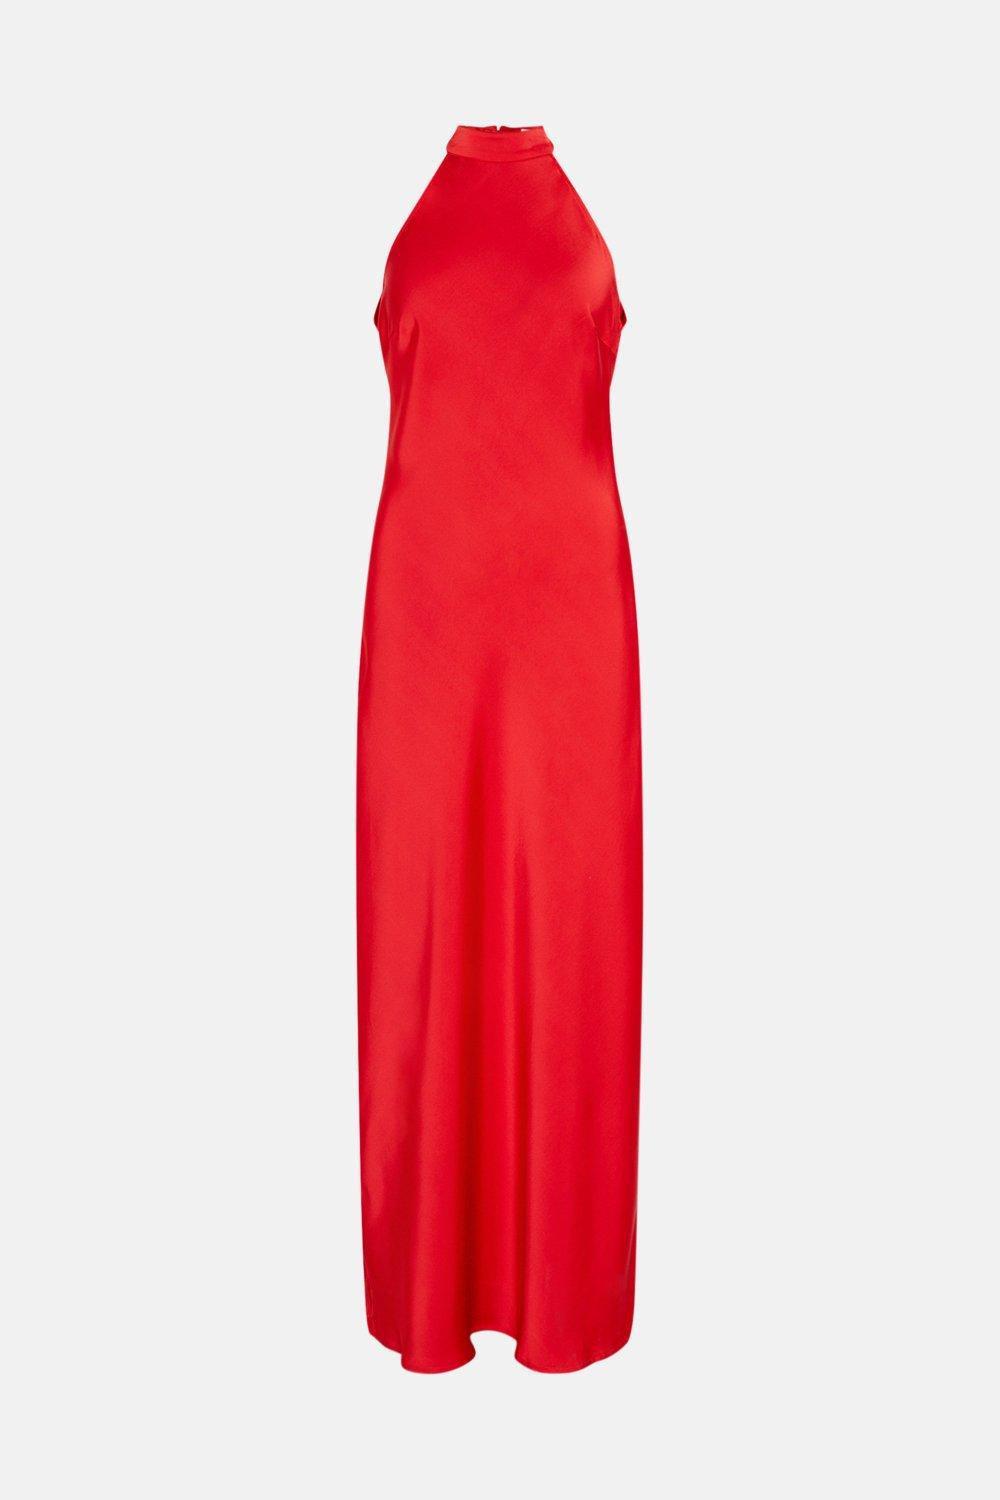 satynowa czerwona maxi sukienka odkryte plecy